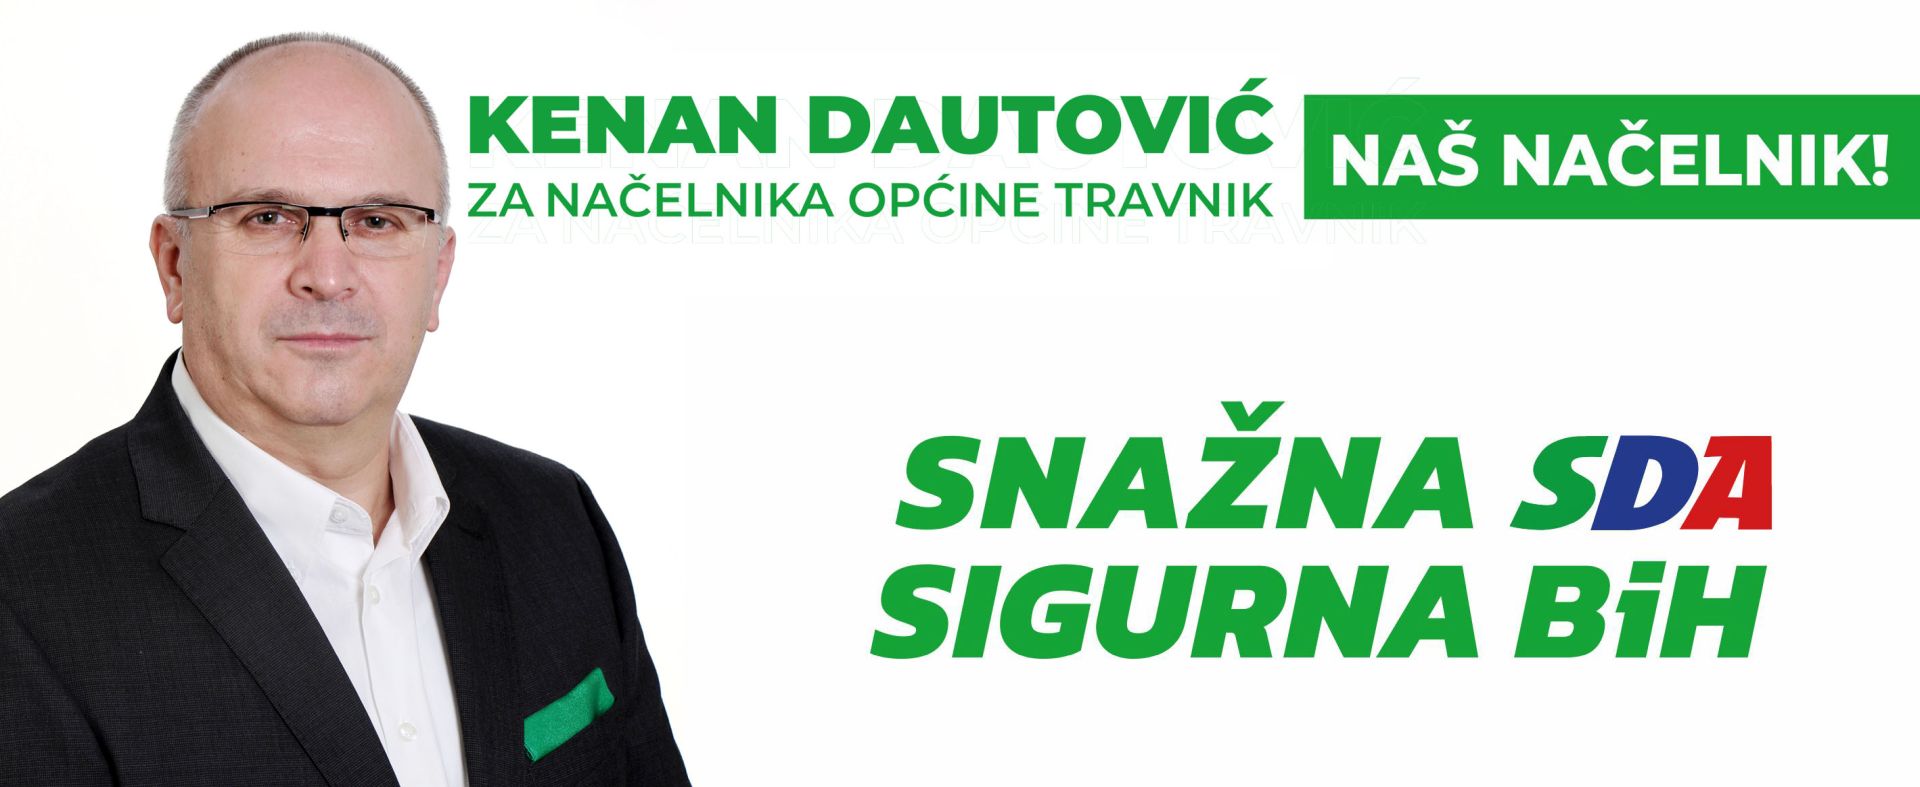 Kenan Dautović - Biografija